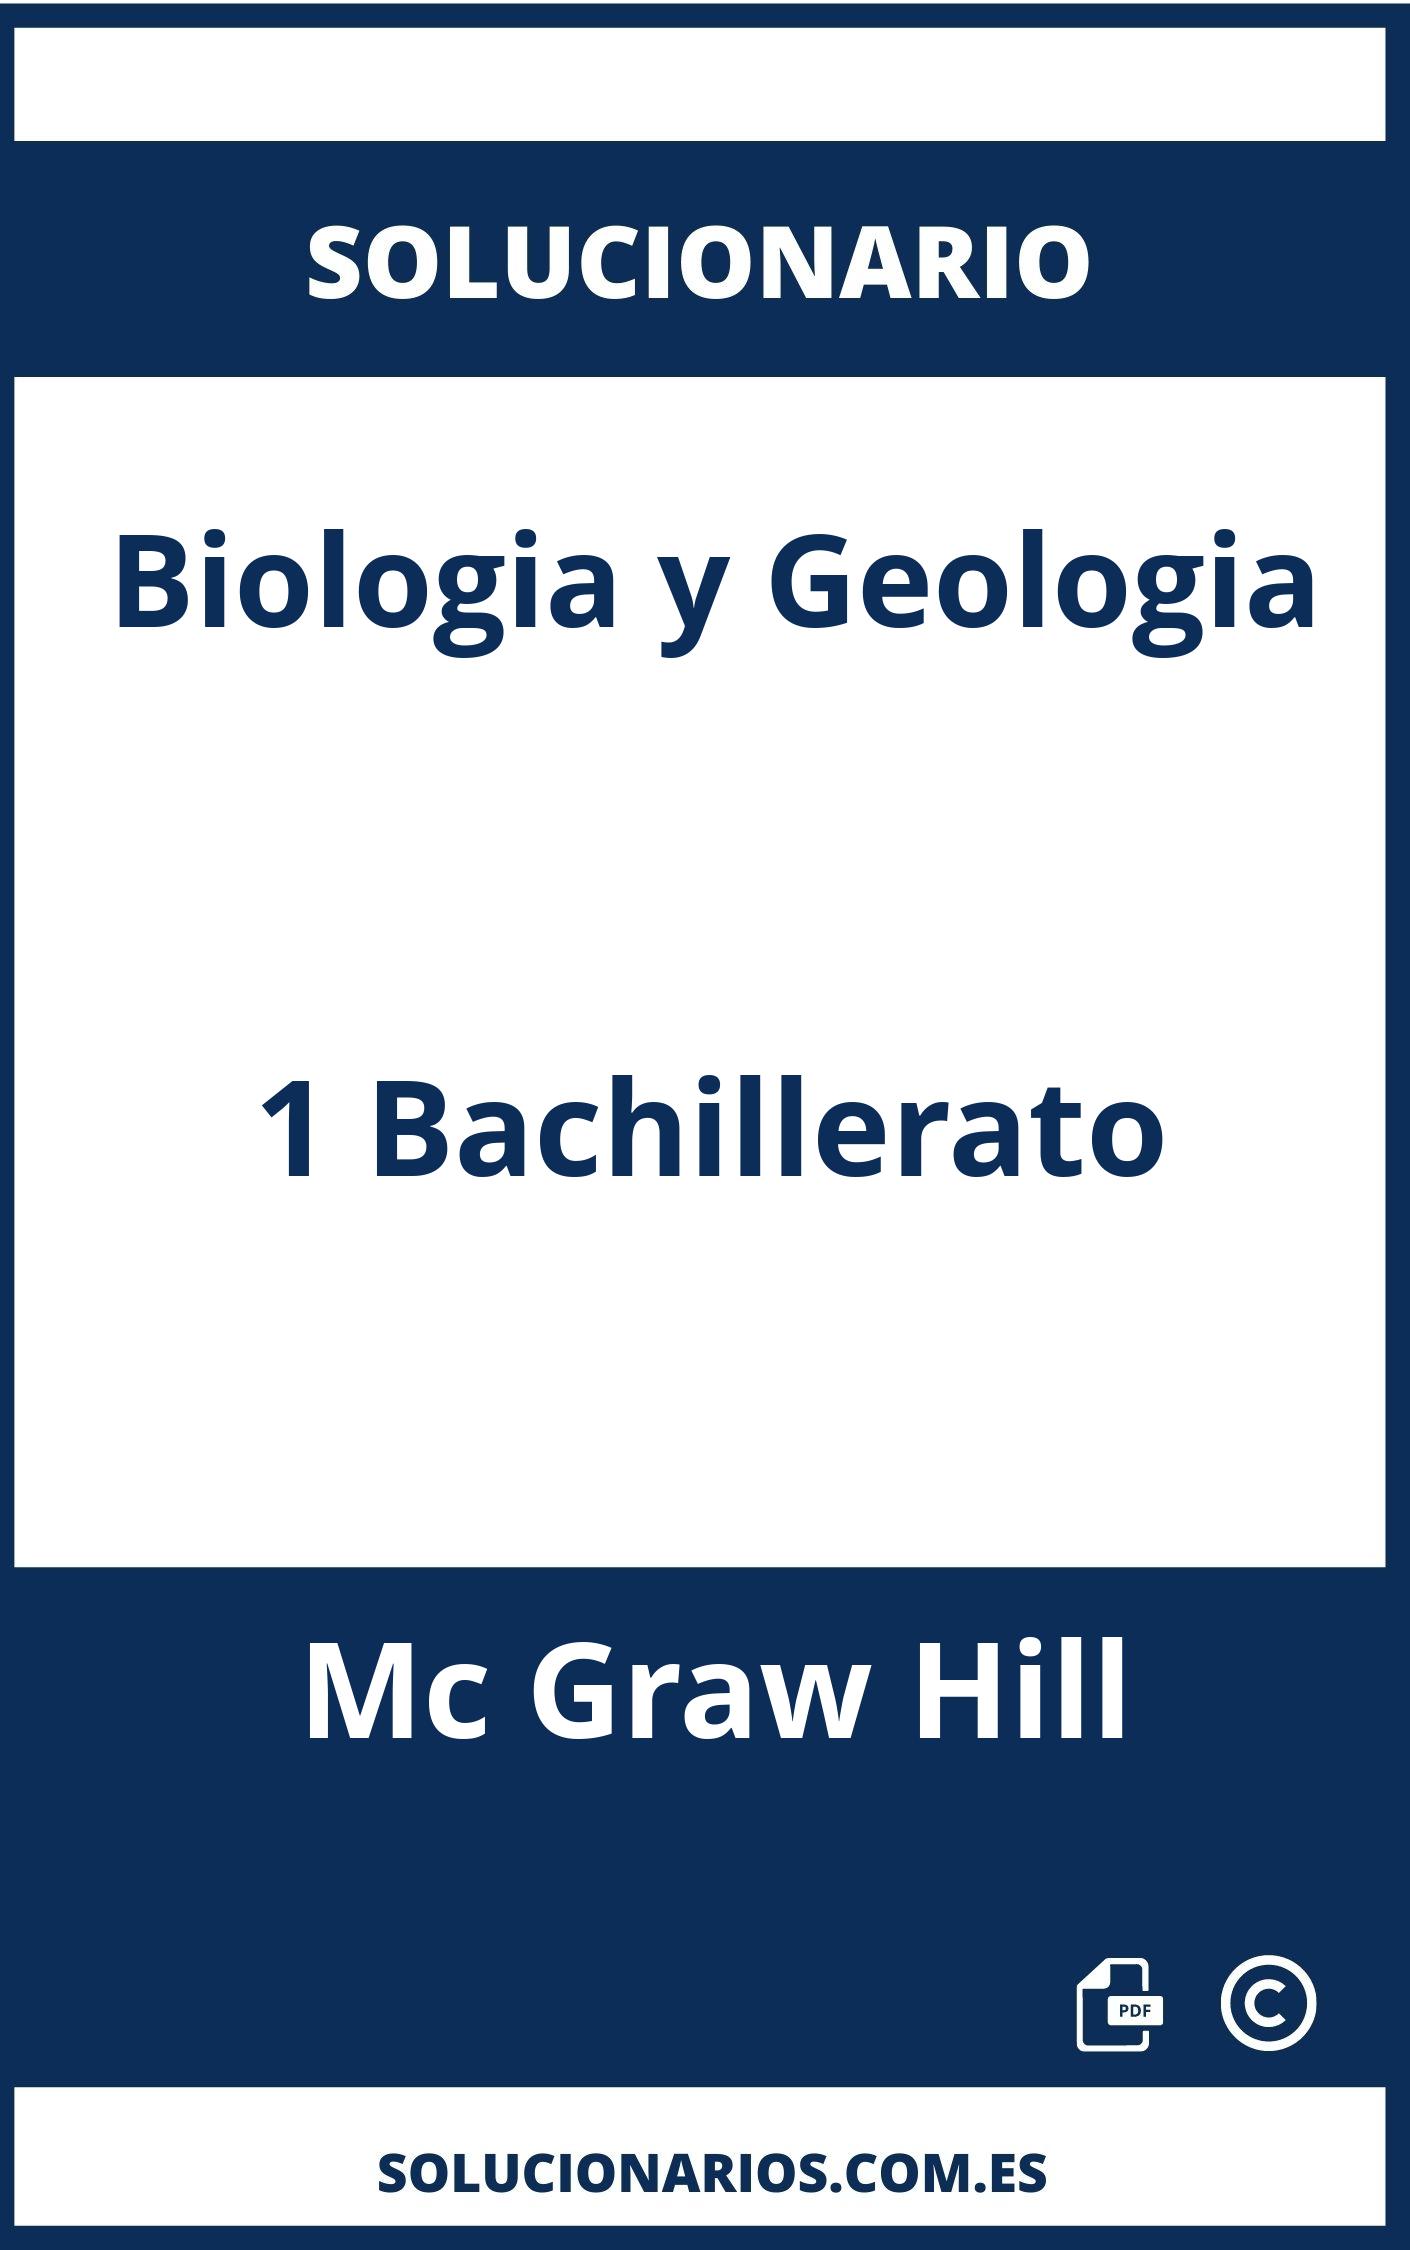 Solucionario Biologia y Geologia 1 Bachillerato Mc Graw Hill